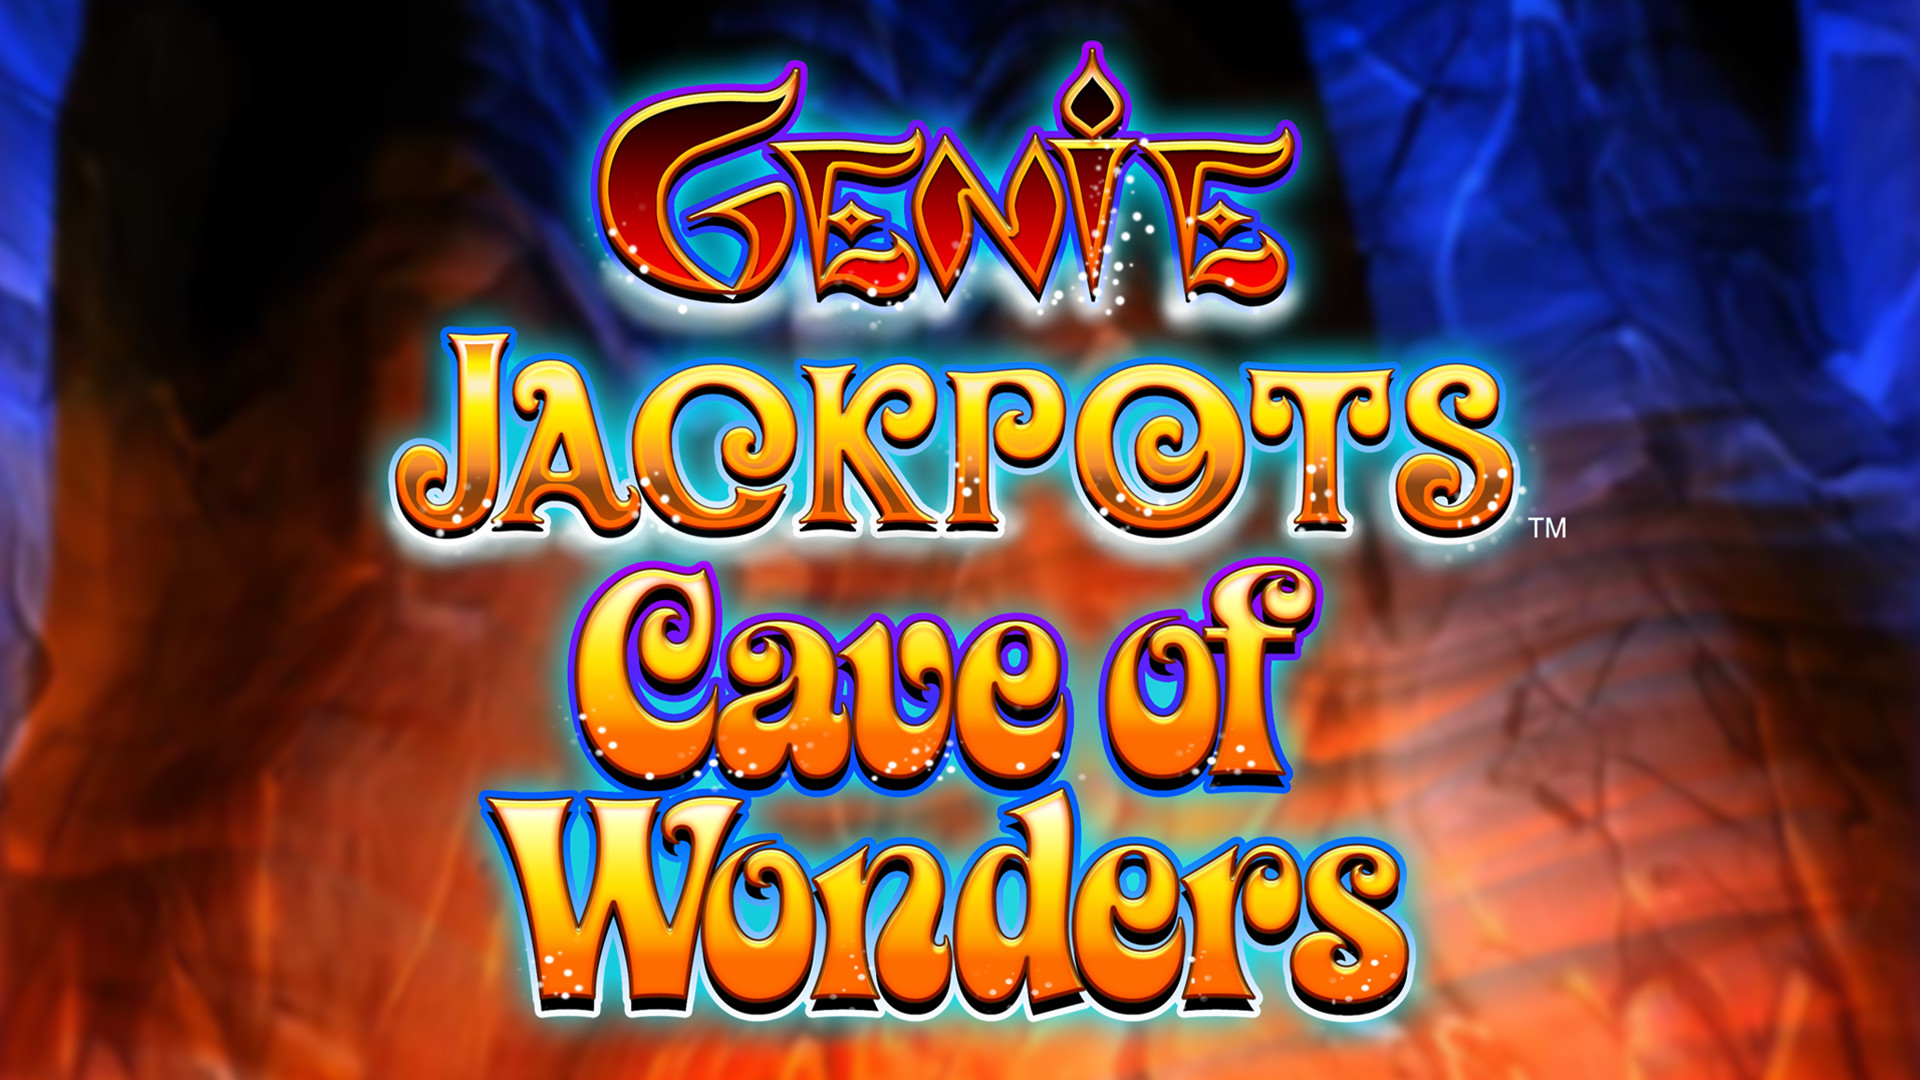 Genie Jackpots – Cave of Wonders